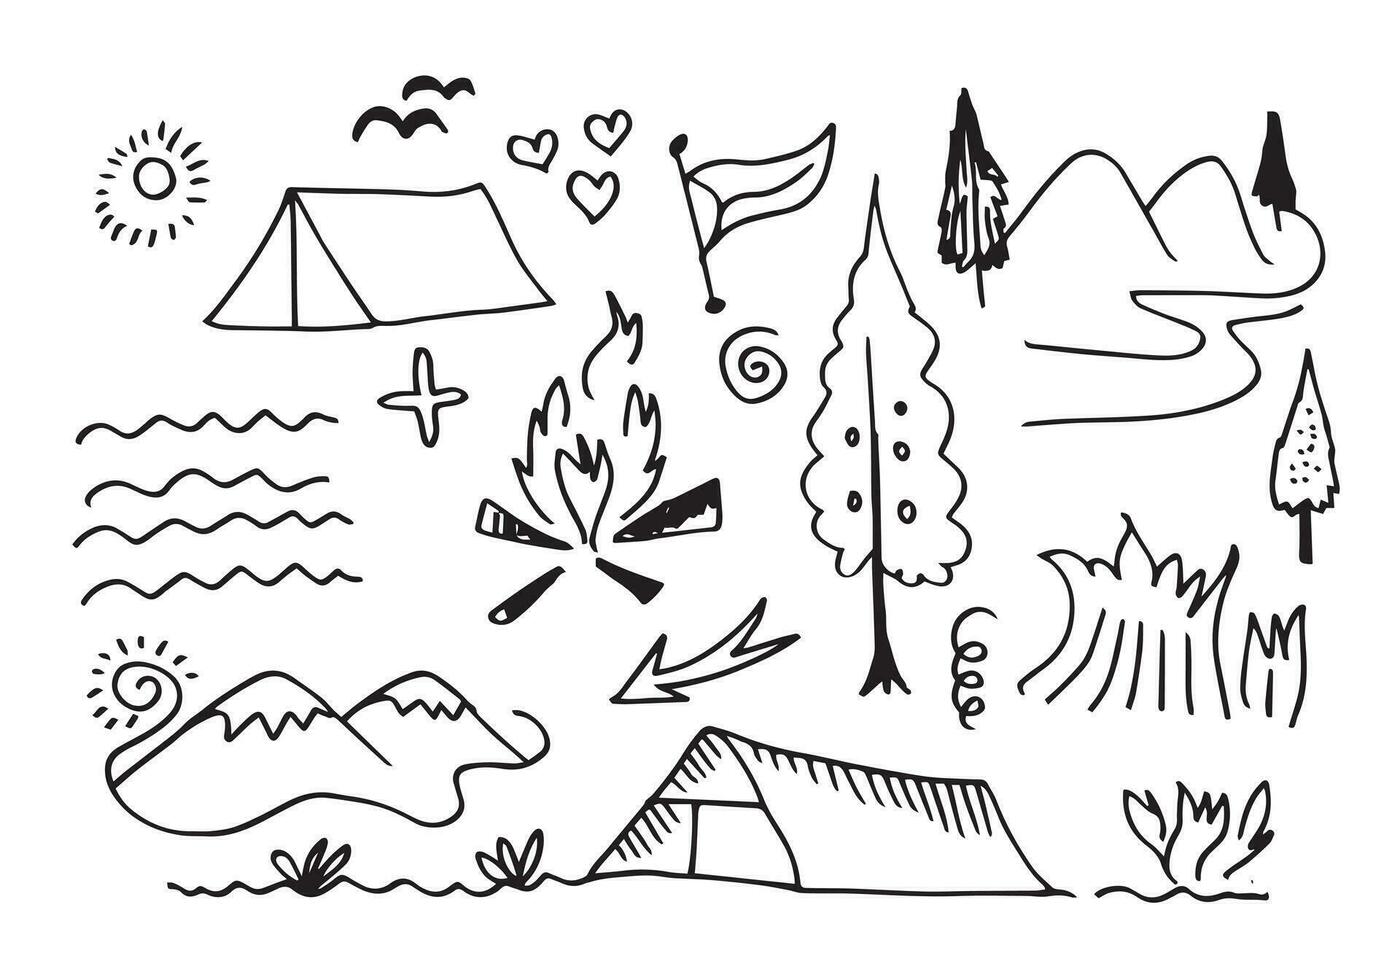 éléments de camping et de randonnée dessinés à la main, isolés sur fond blanc. icônes de doodle de camping croquis faits à la main. vecteur